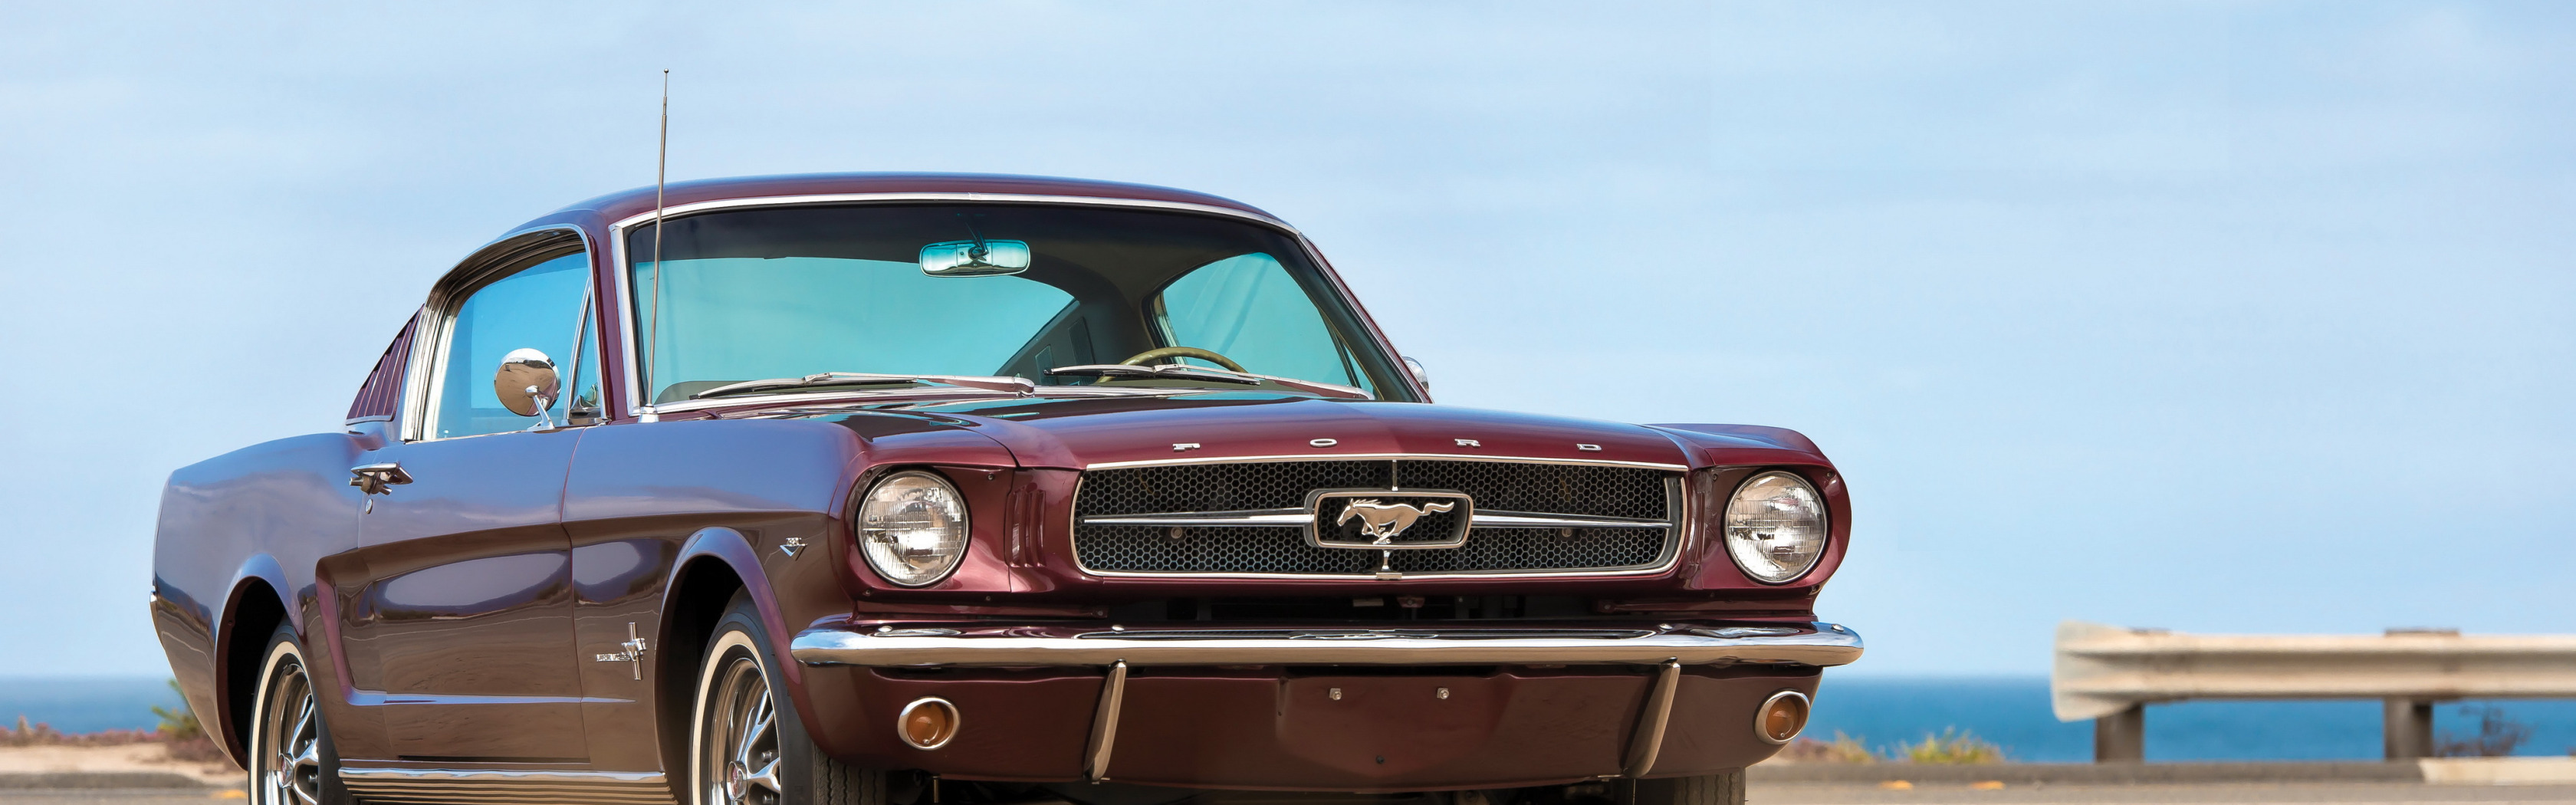 Продается Ford Mustang Fastback 1967 года, купить ретро ...